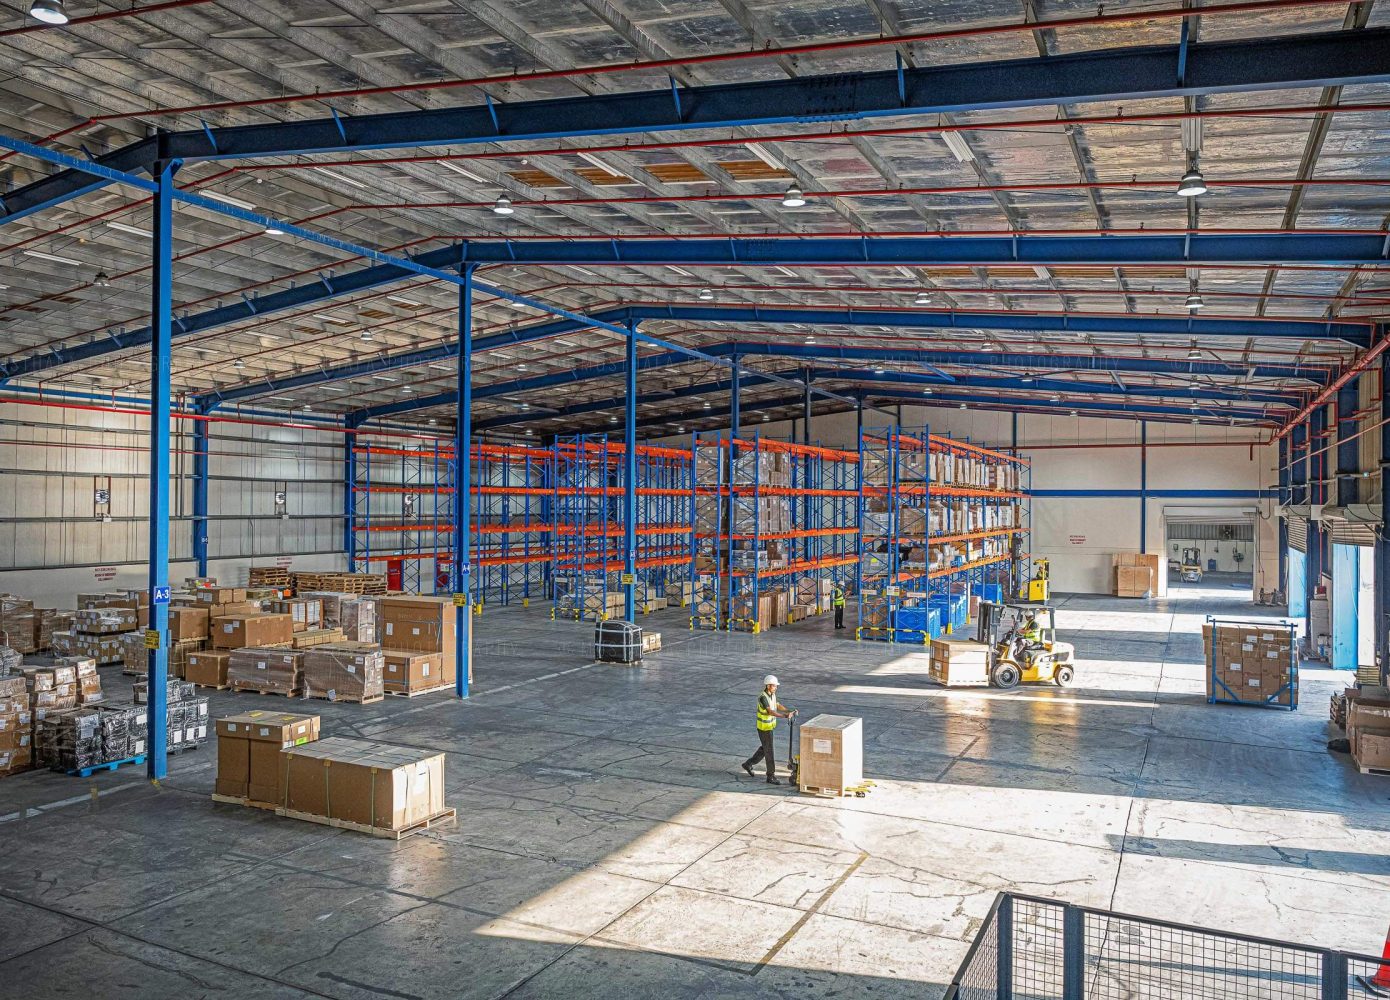 Dubai Warehouse photographer storage photography distribution industrial factory UAE Abu Dhabi United Arab Emirates 03